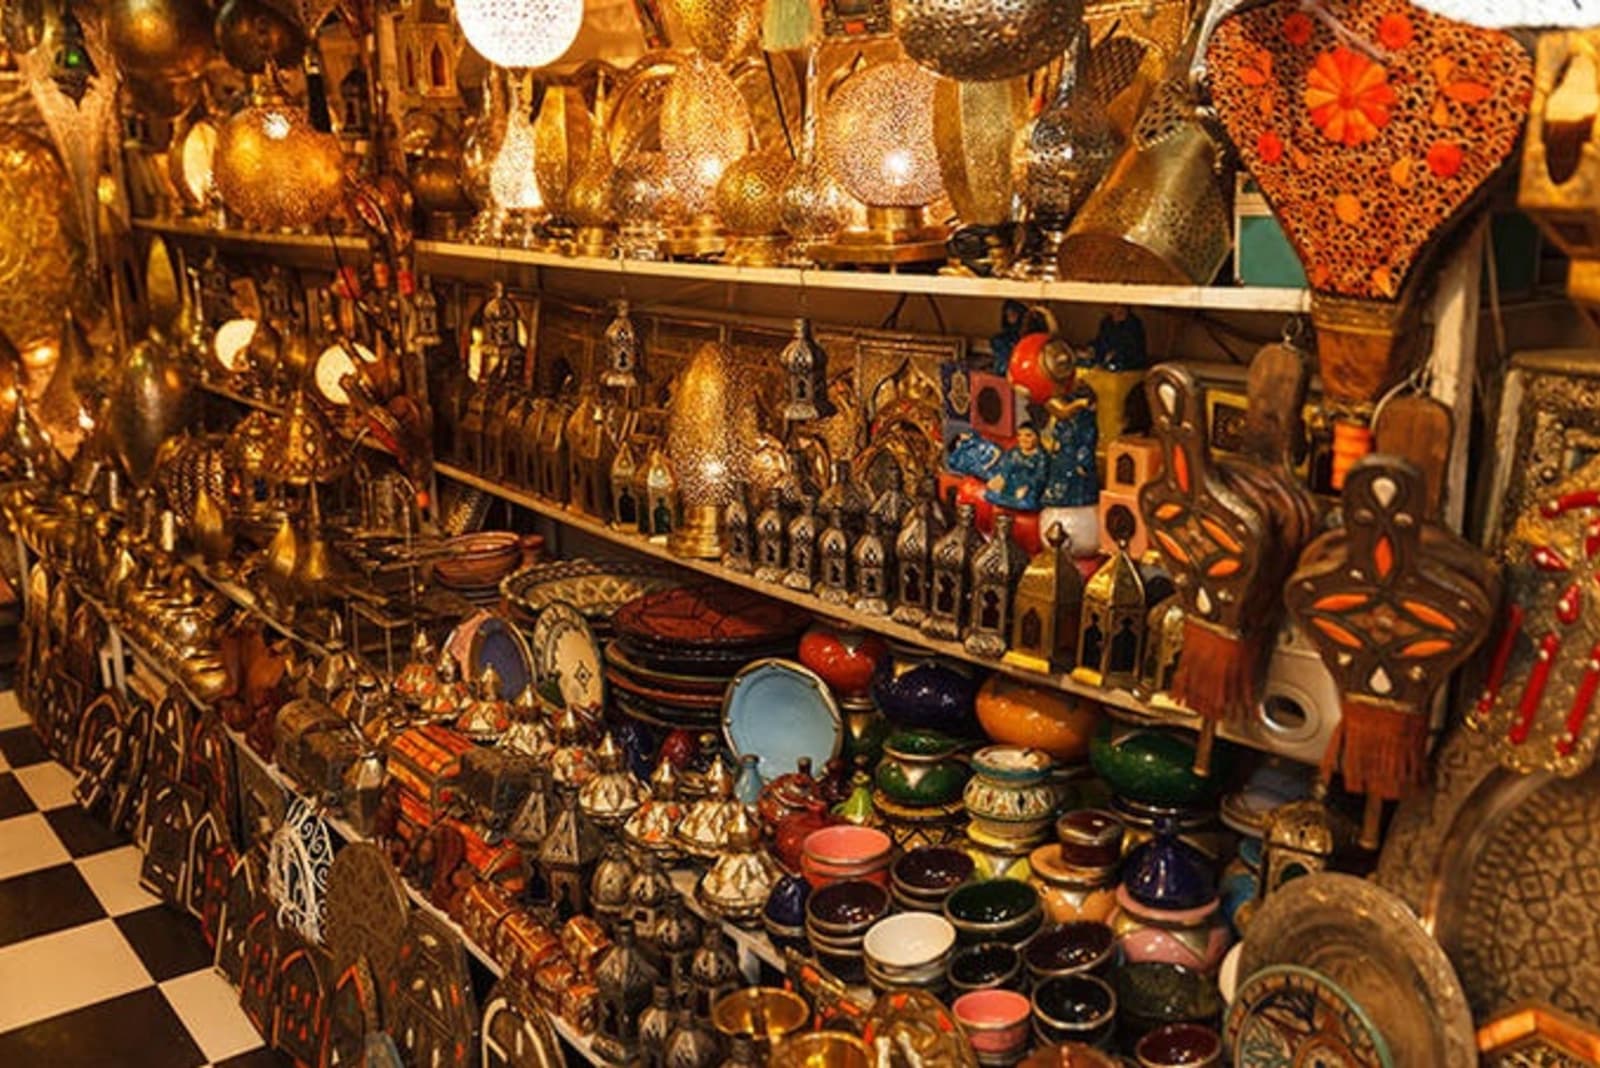 rs-shopping-marrakech-shutterstock_663935488.jpg